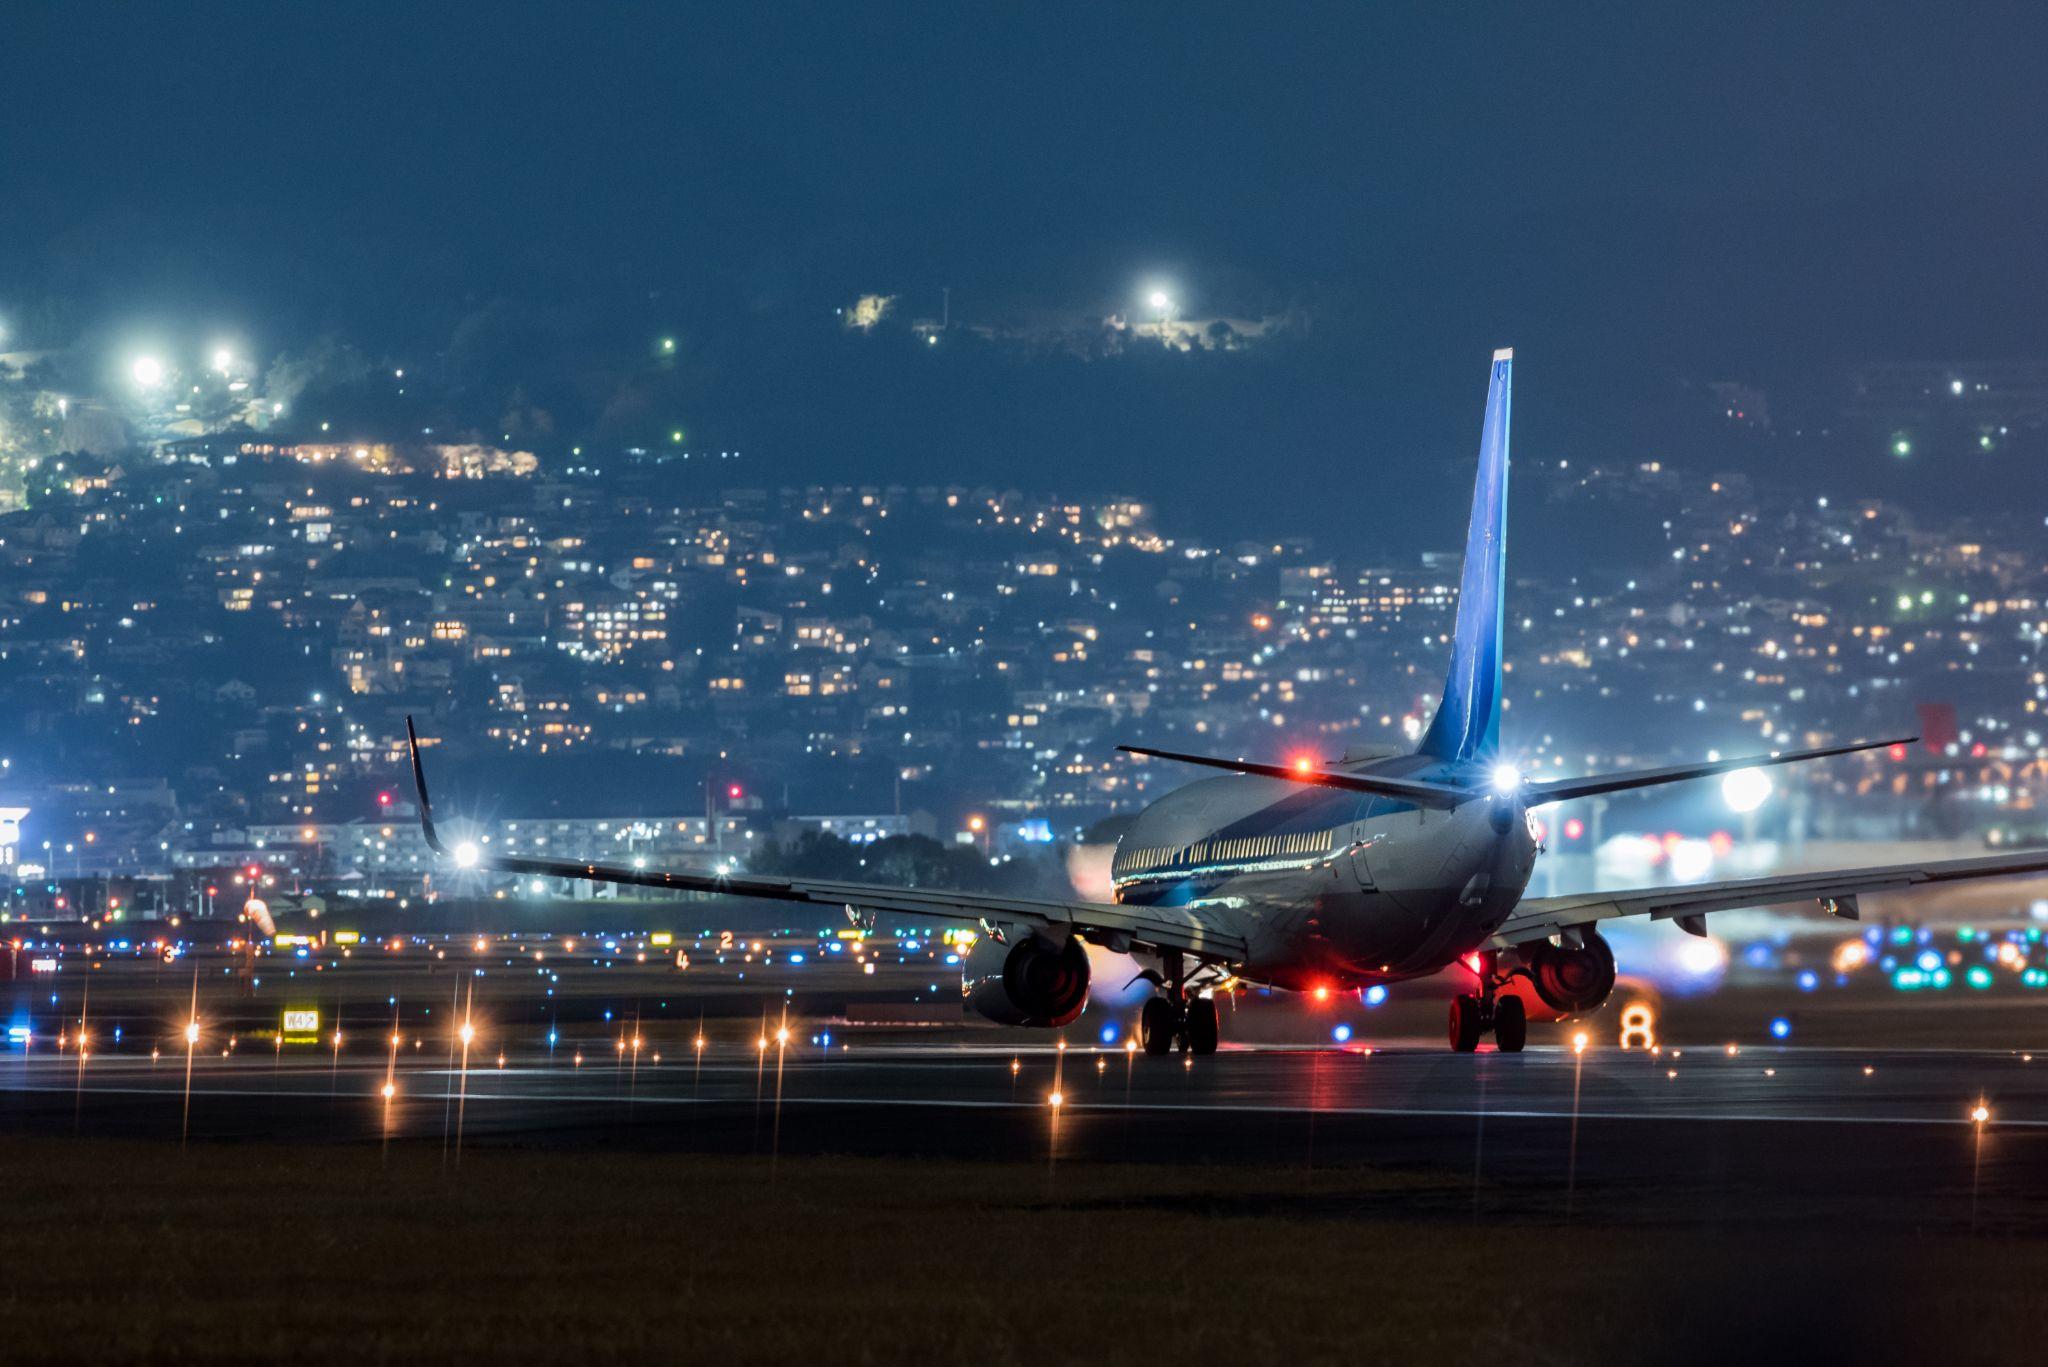 B737NG airplane at night on tarmac.